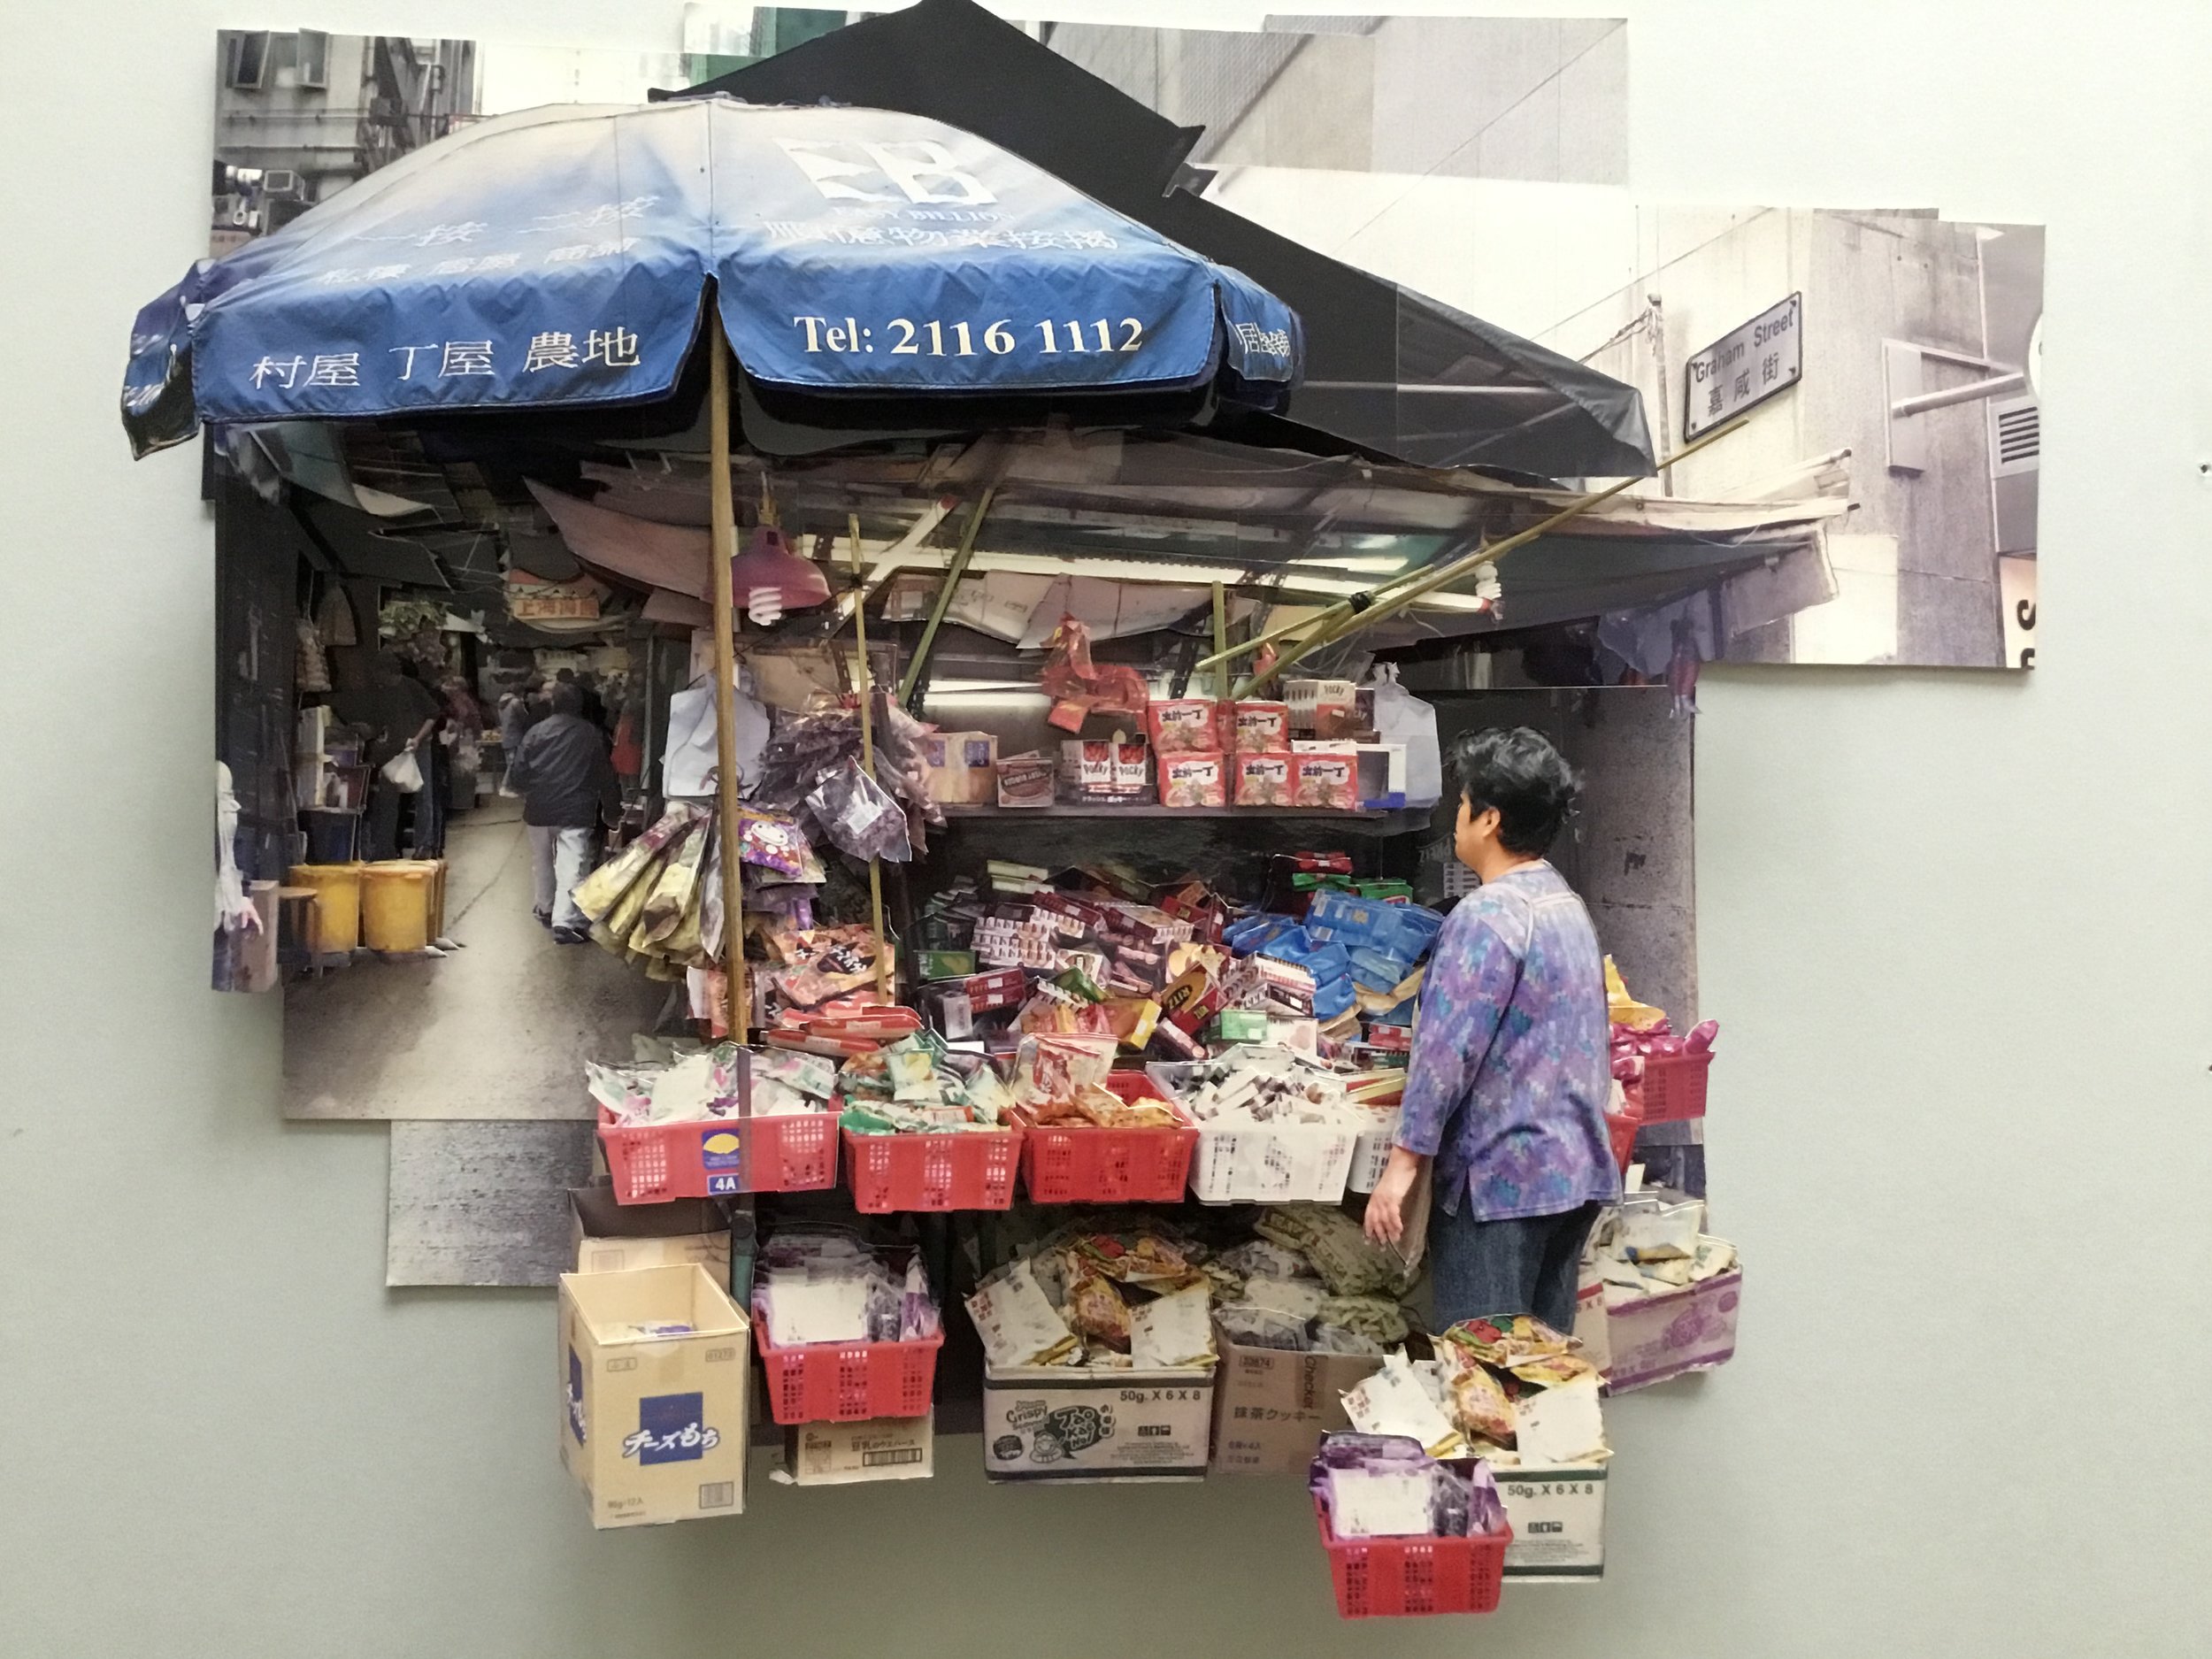 葉家偉 Alexis Ip '中環嘉咸街蜃食檔 Snack Stall at Graham Street (Central)' (Hong Kong, 2017) Courtesy of Blue Lotus Gallery.JPG